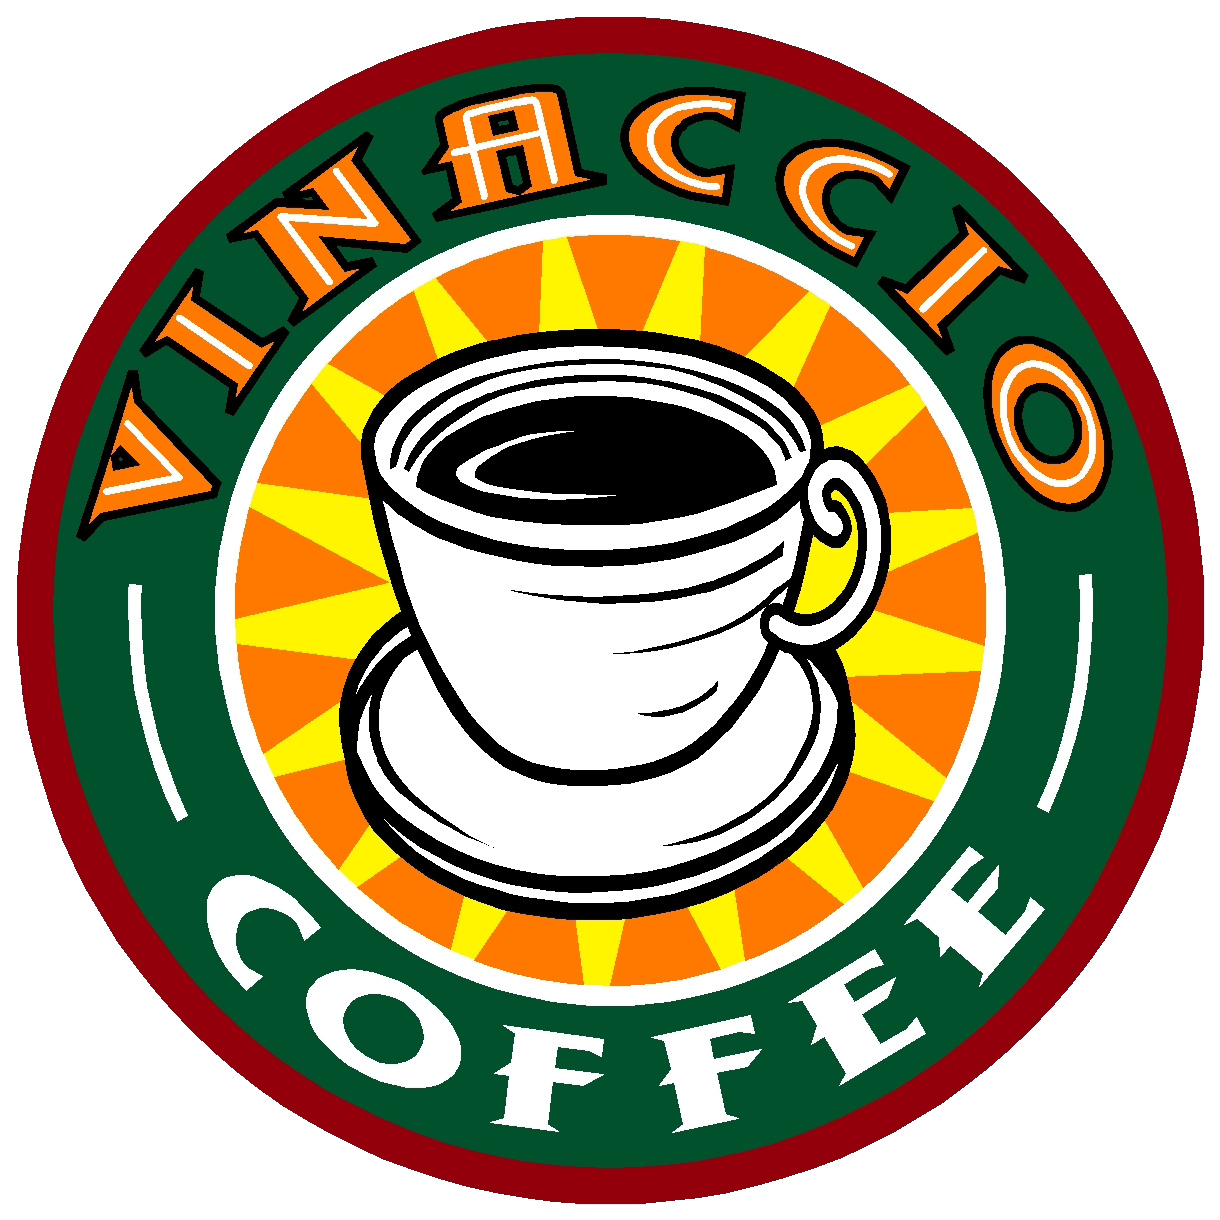 Vinaccio Coffee